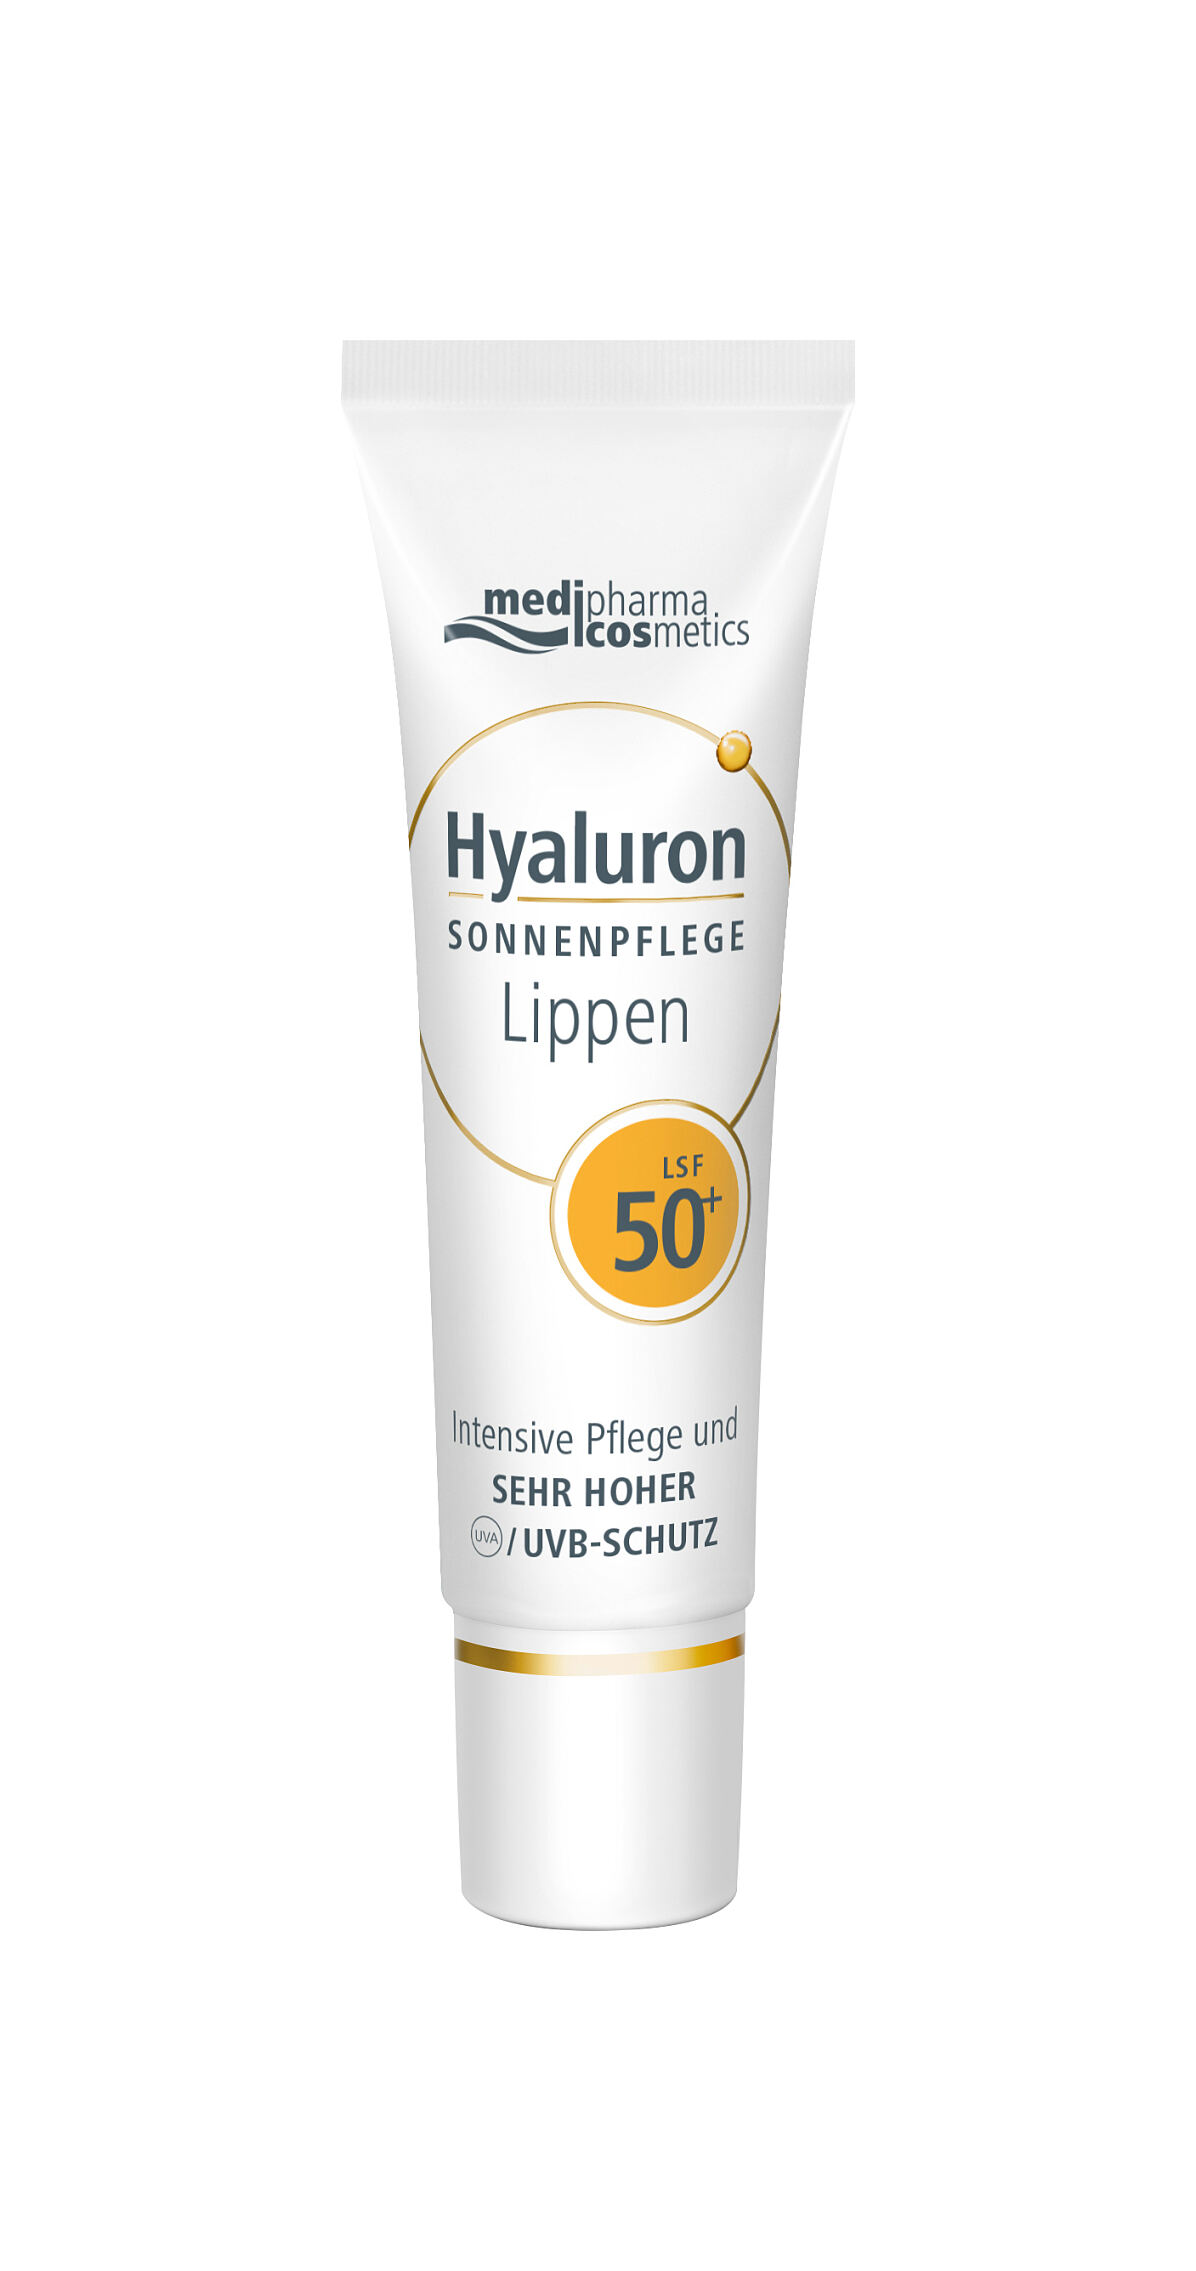 medipharma-cosmetics-Hyaluron-SONNENPFLEGE-Lippen-50